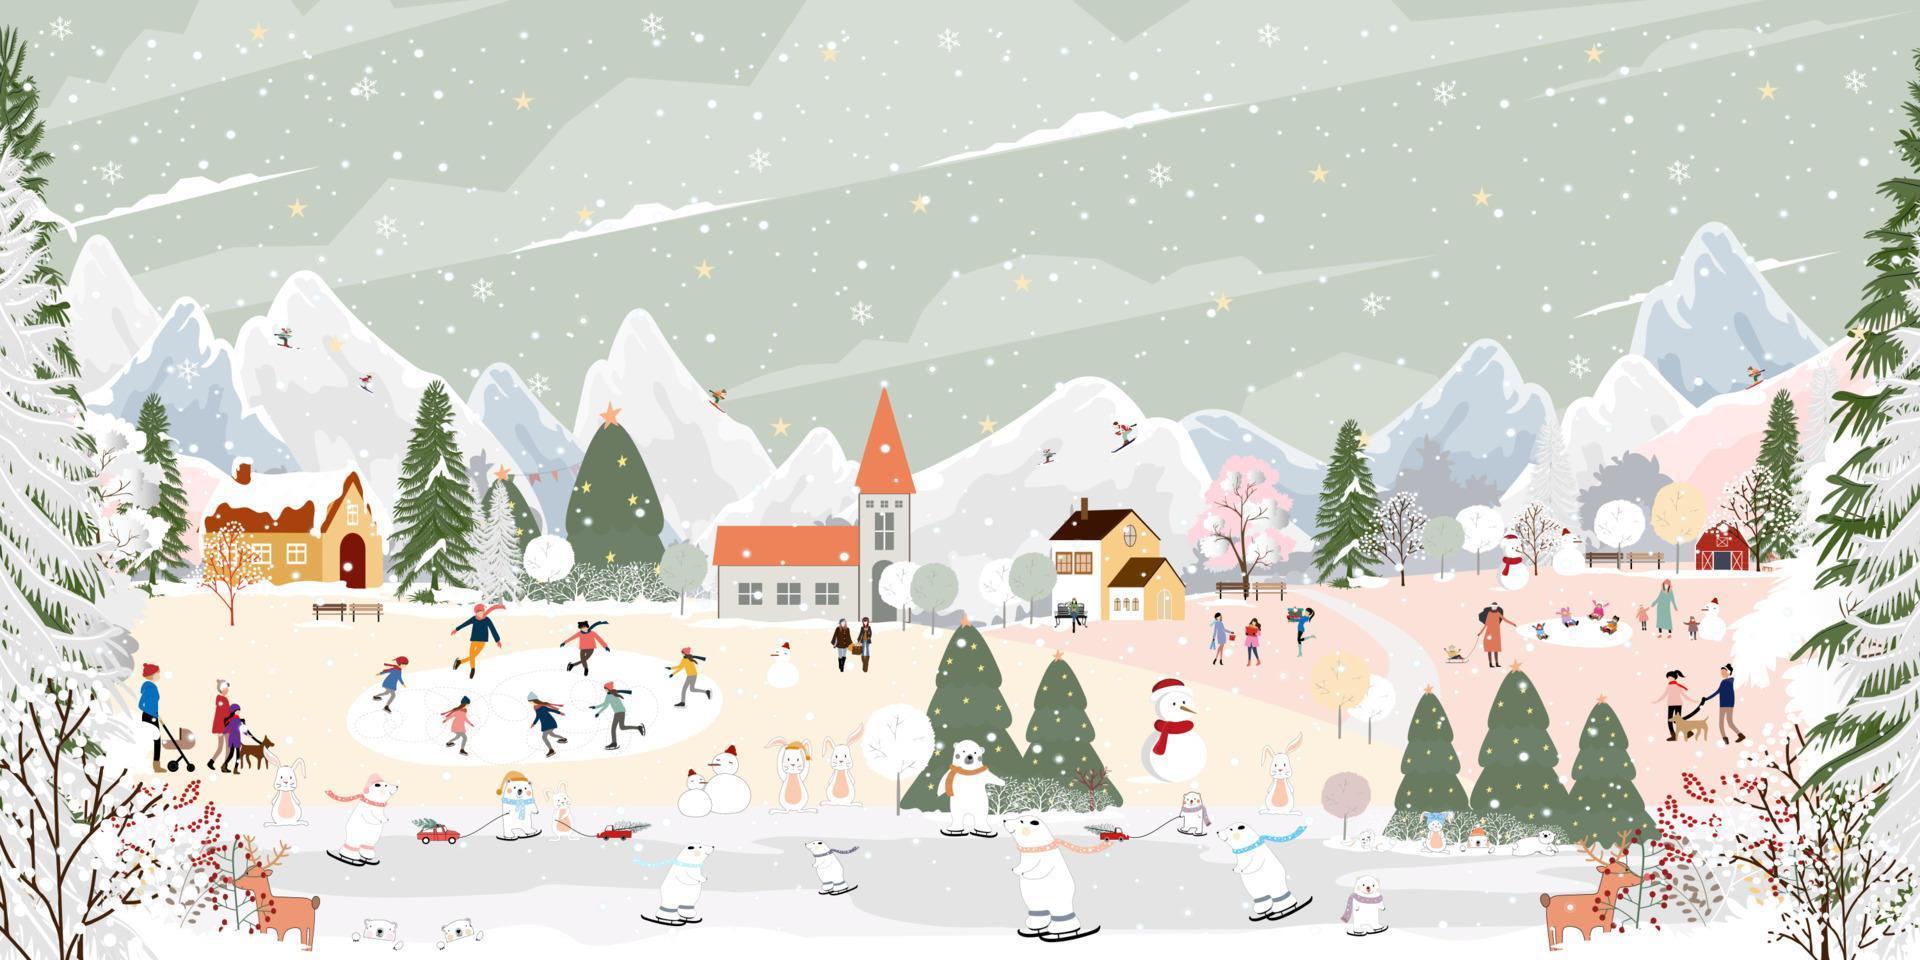 paysage d'hiver avec des gens heureux, ours polaire et lapin jouant au patin à glace dans le parc, bannière vectorielle lapin et ours au pays des merveilles d'hiver célébrant dans la forêt, joyeux noël et nouvel an 2023 arrière-plan vecteur